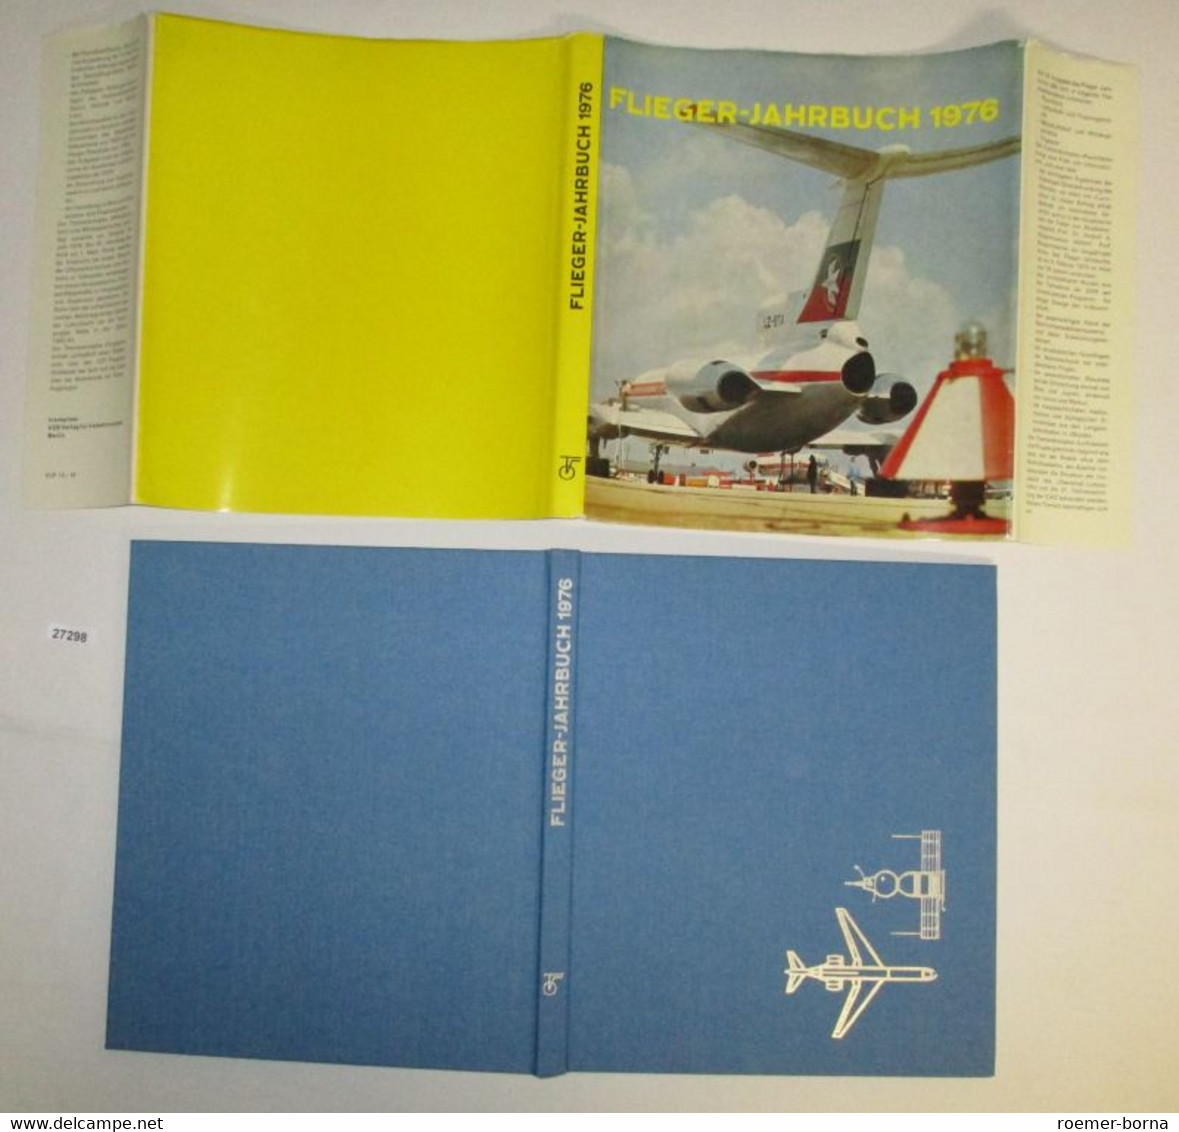 Flieger Jahrbuch 1976 - Calendari